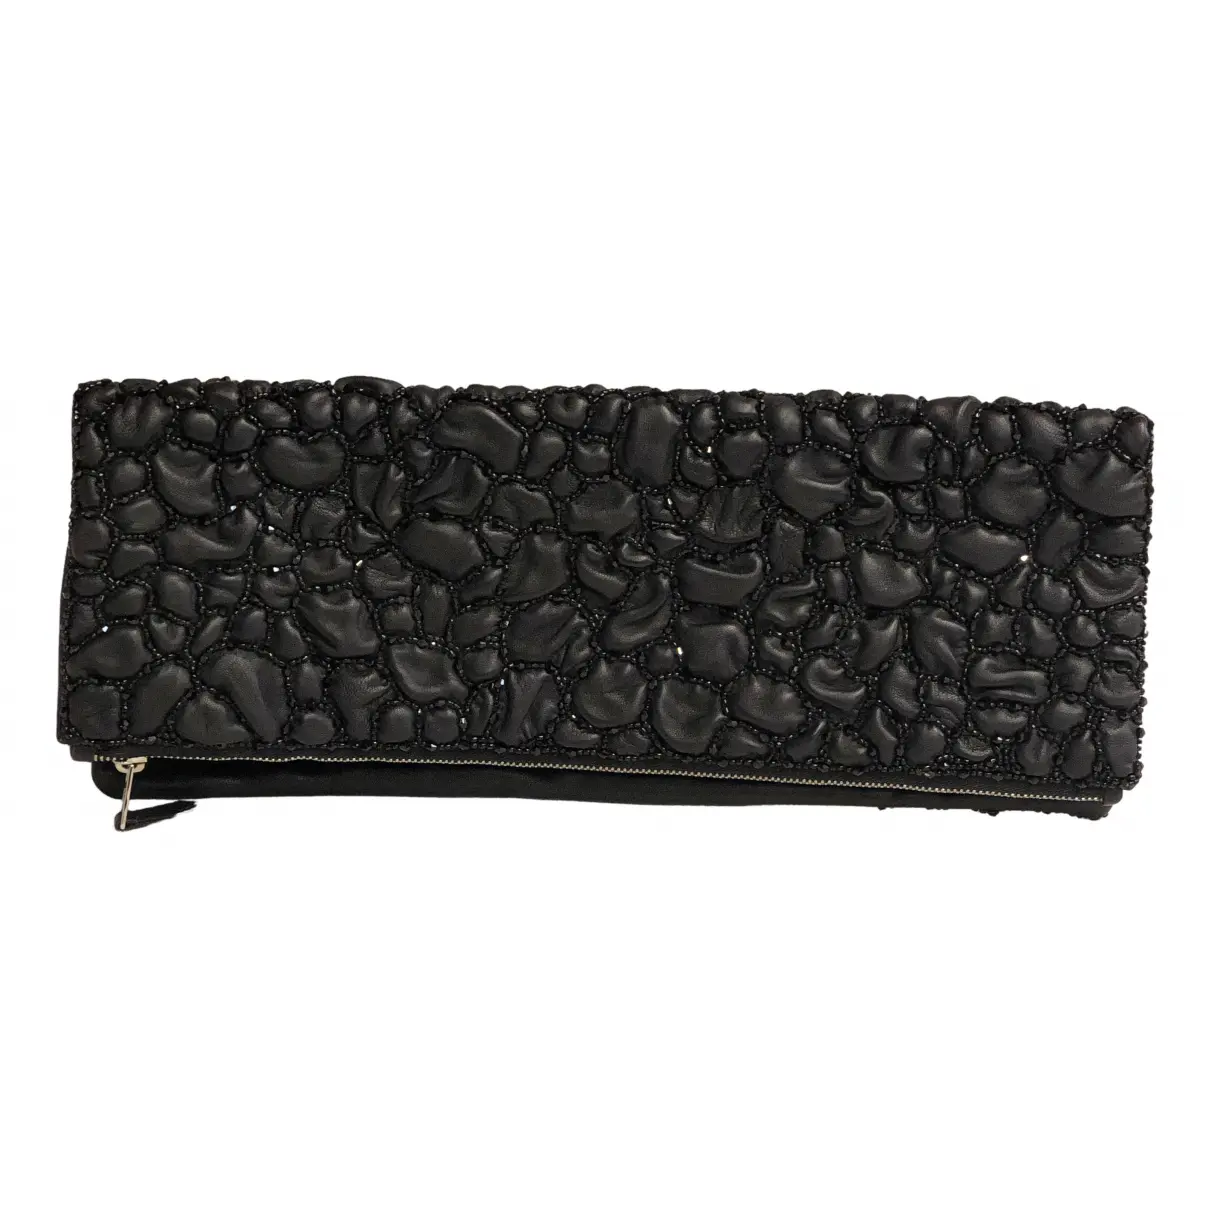 Leather clutch bag Giorgio Armani